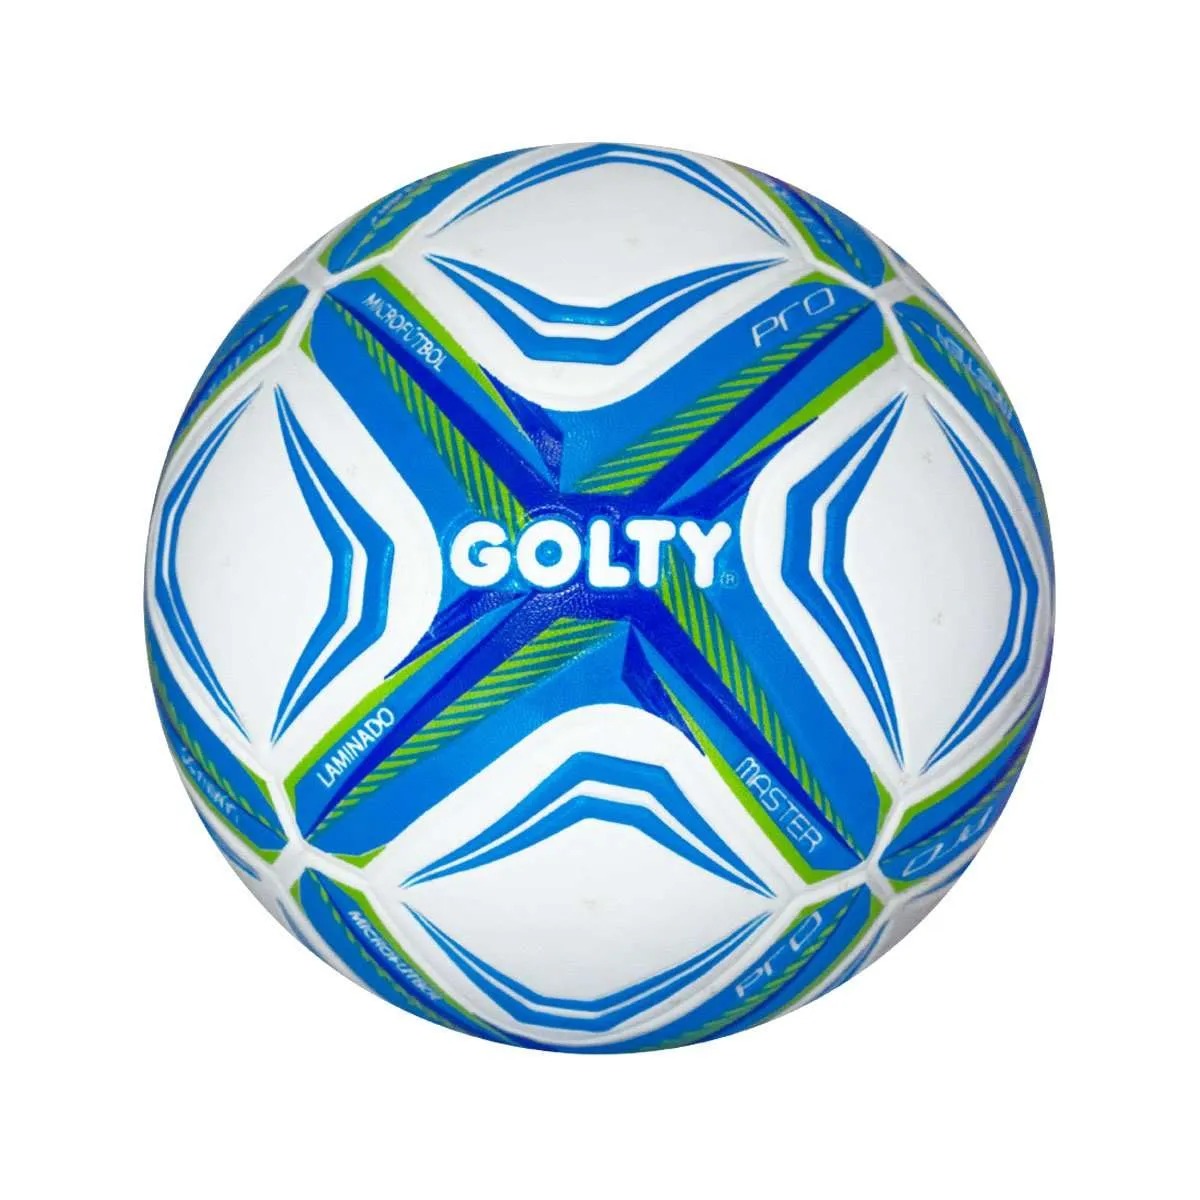 Balones de Fútbol - Entra y Compra en Luegoapago Online